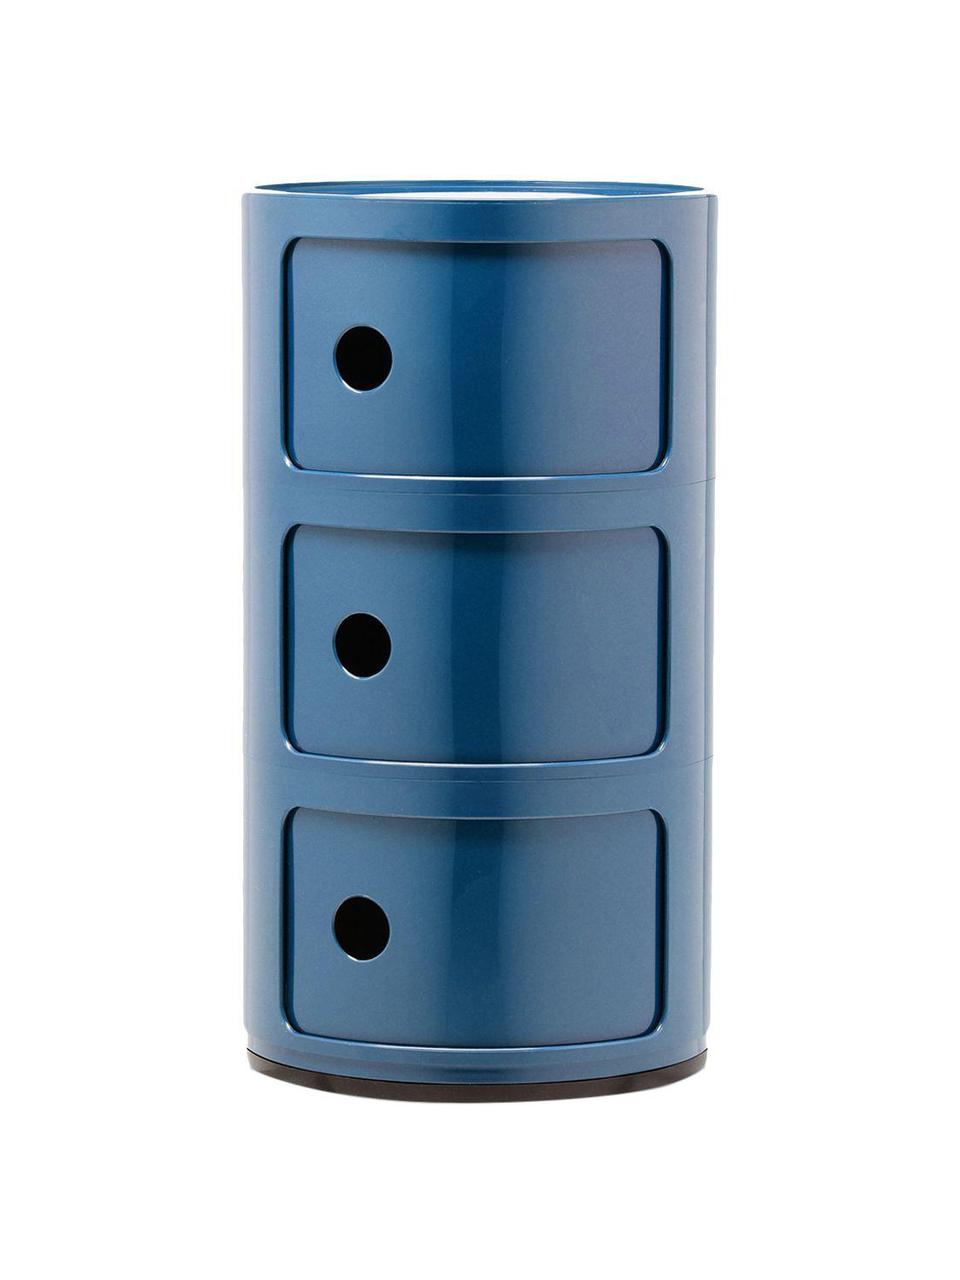 Contenitore di design con 3 cassetti Componibili, Plastica certificata Greenguard, Blu lucido, Ø 32 x Alt. 59 cm